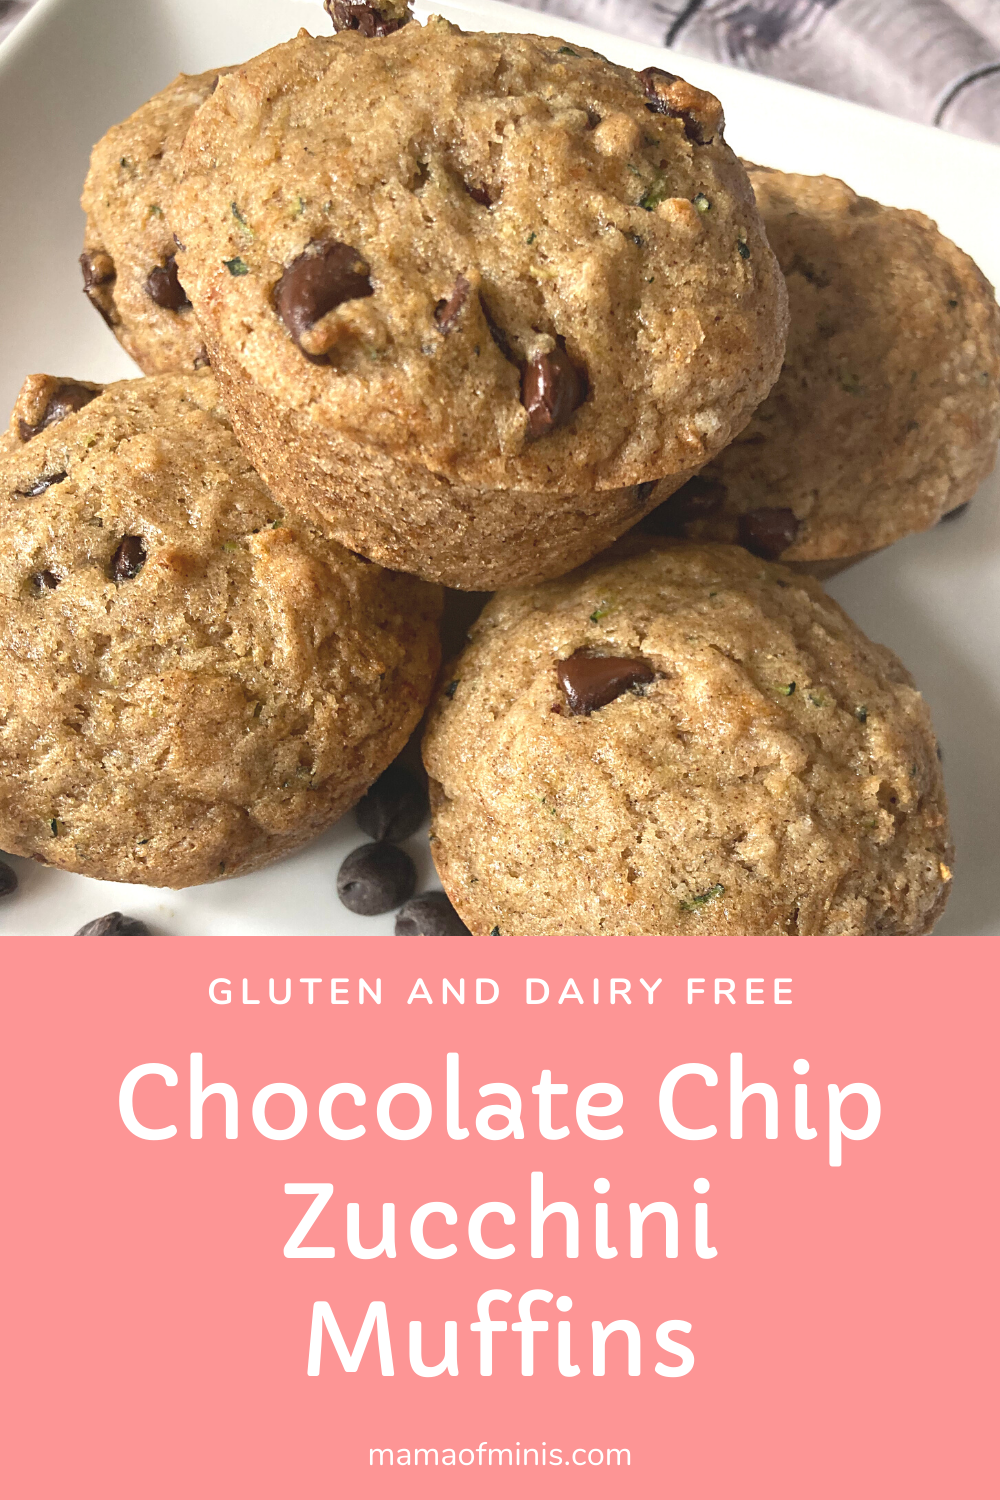 Chocolate Chip Zucchini Muffins - Gluten and Dairy Free